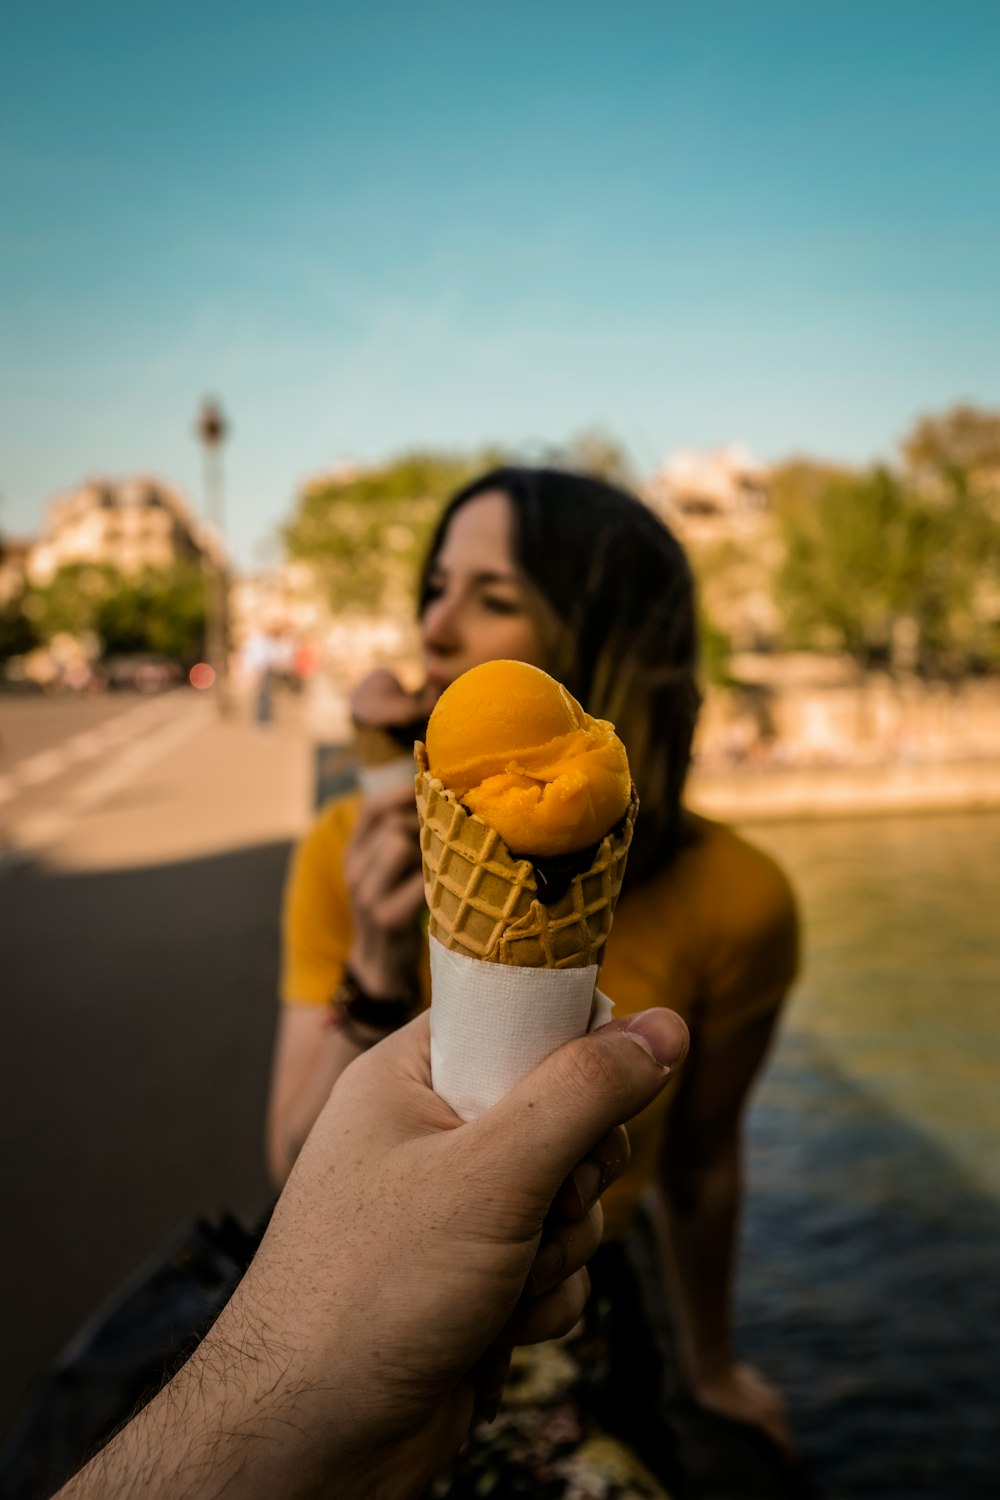 Photographie à mise au point peu profonde d’une personne tenant de la crème glacée dans un cône